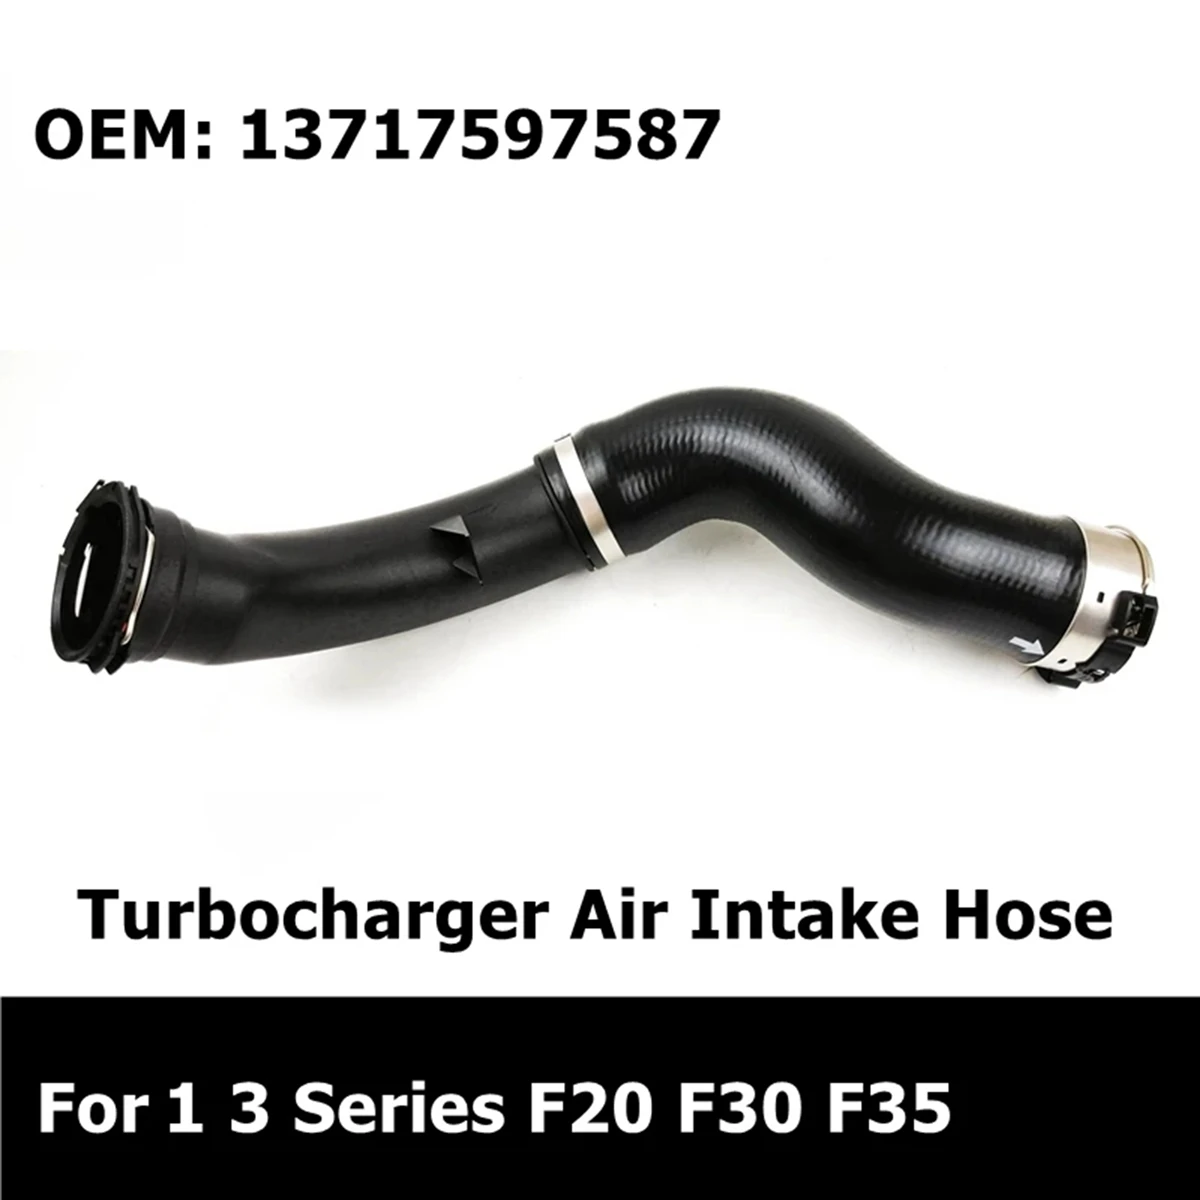 13717597587 de los Accesorios del Coche del Turbocompresor Tubo de Manguera de Admisión de Aire para BMW 1 Serie 3 F20 -F21 F30 F31 F35